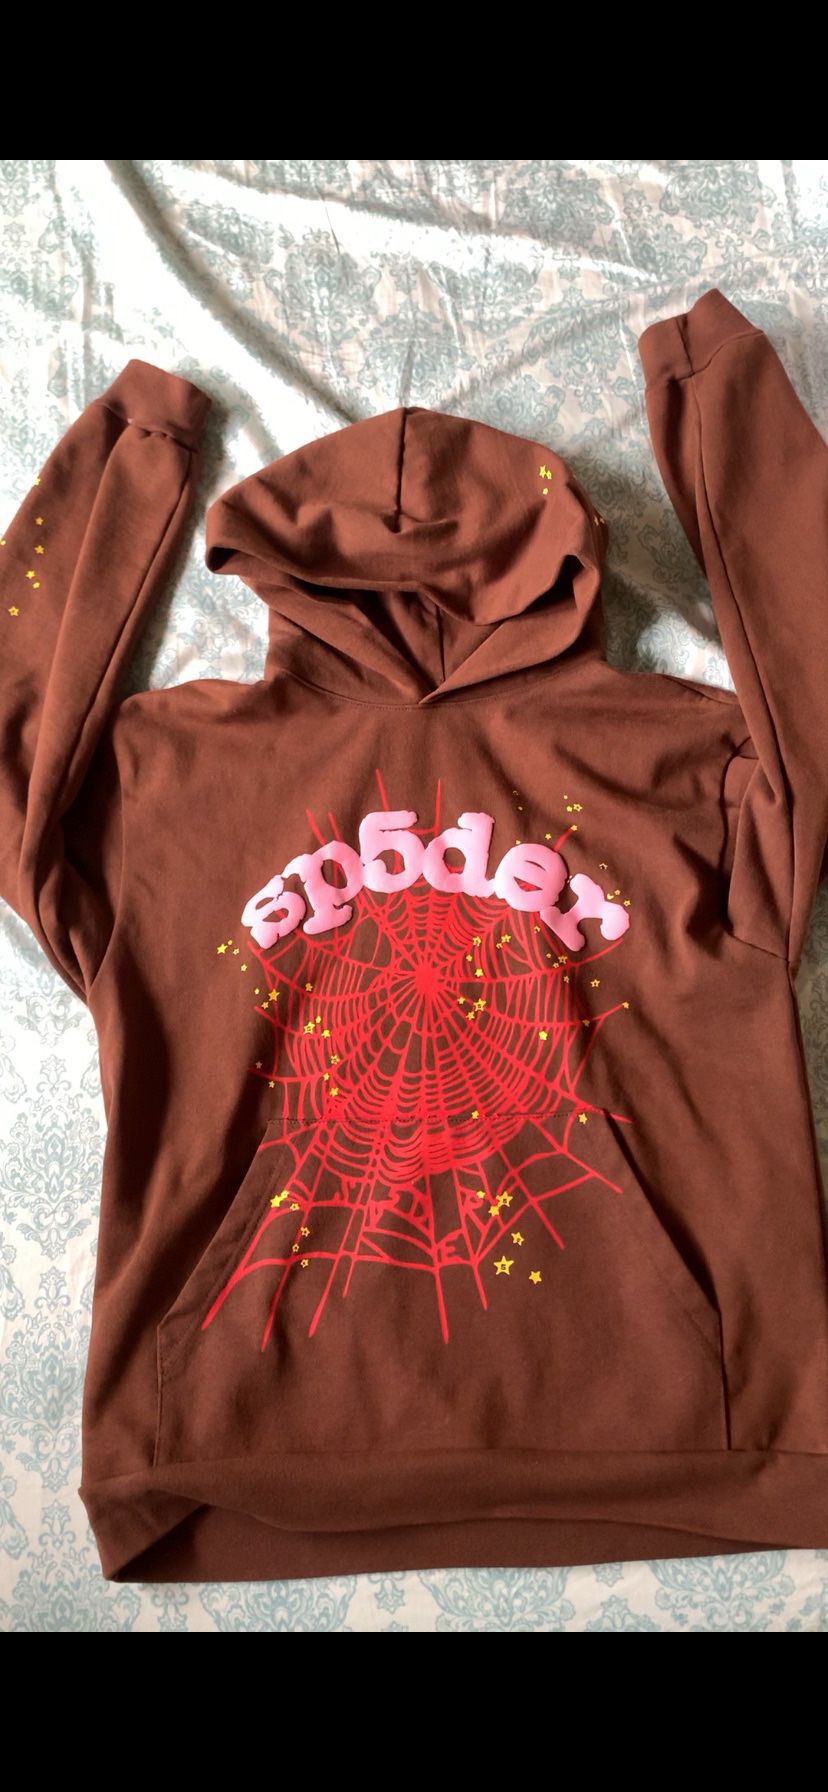 Spider hoodie brown ( sp5der )